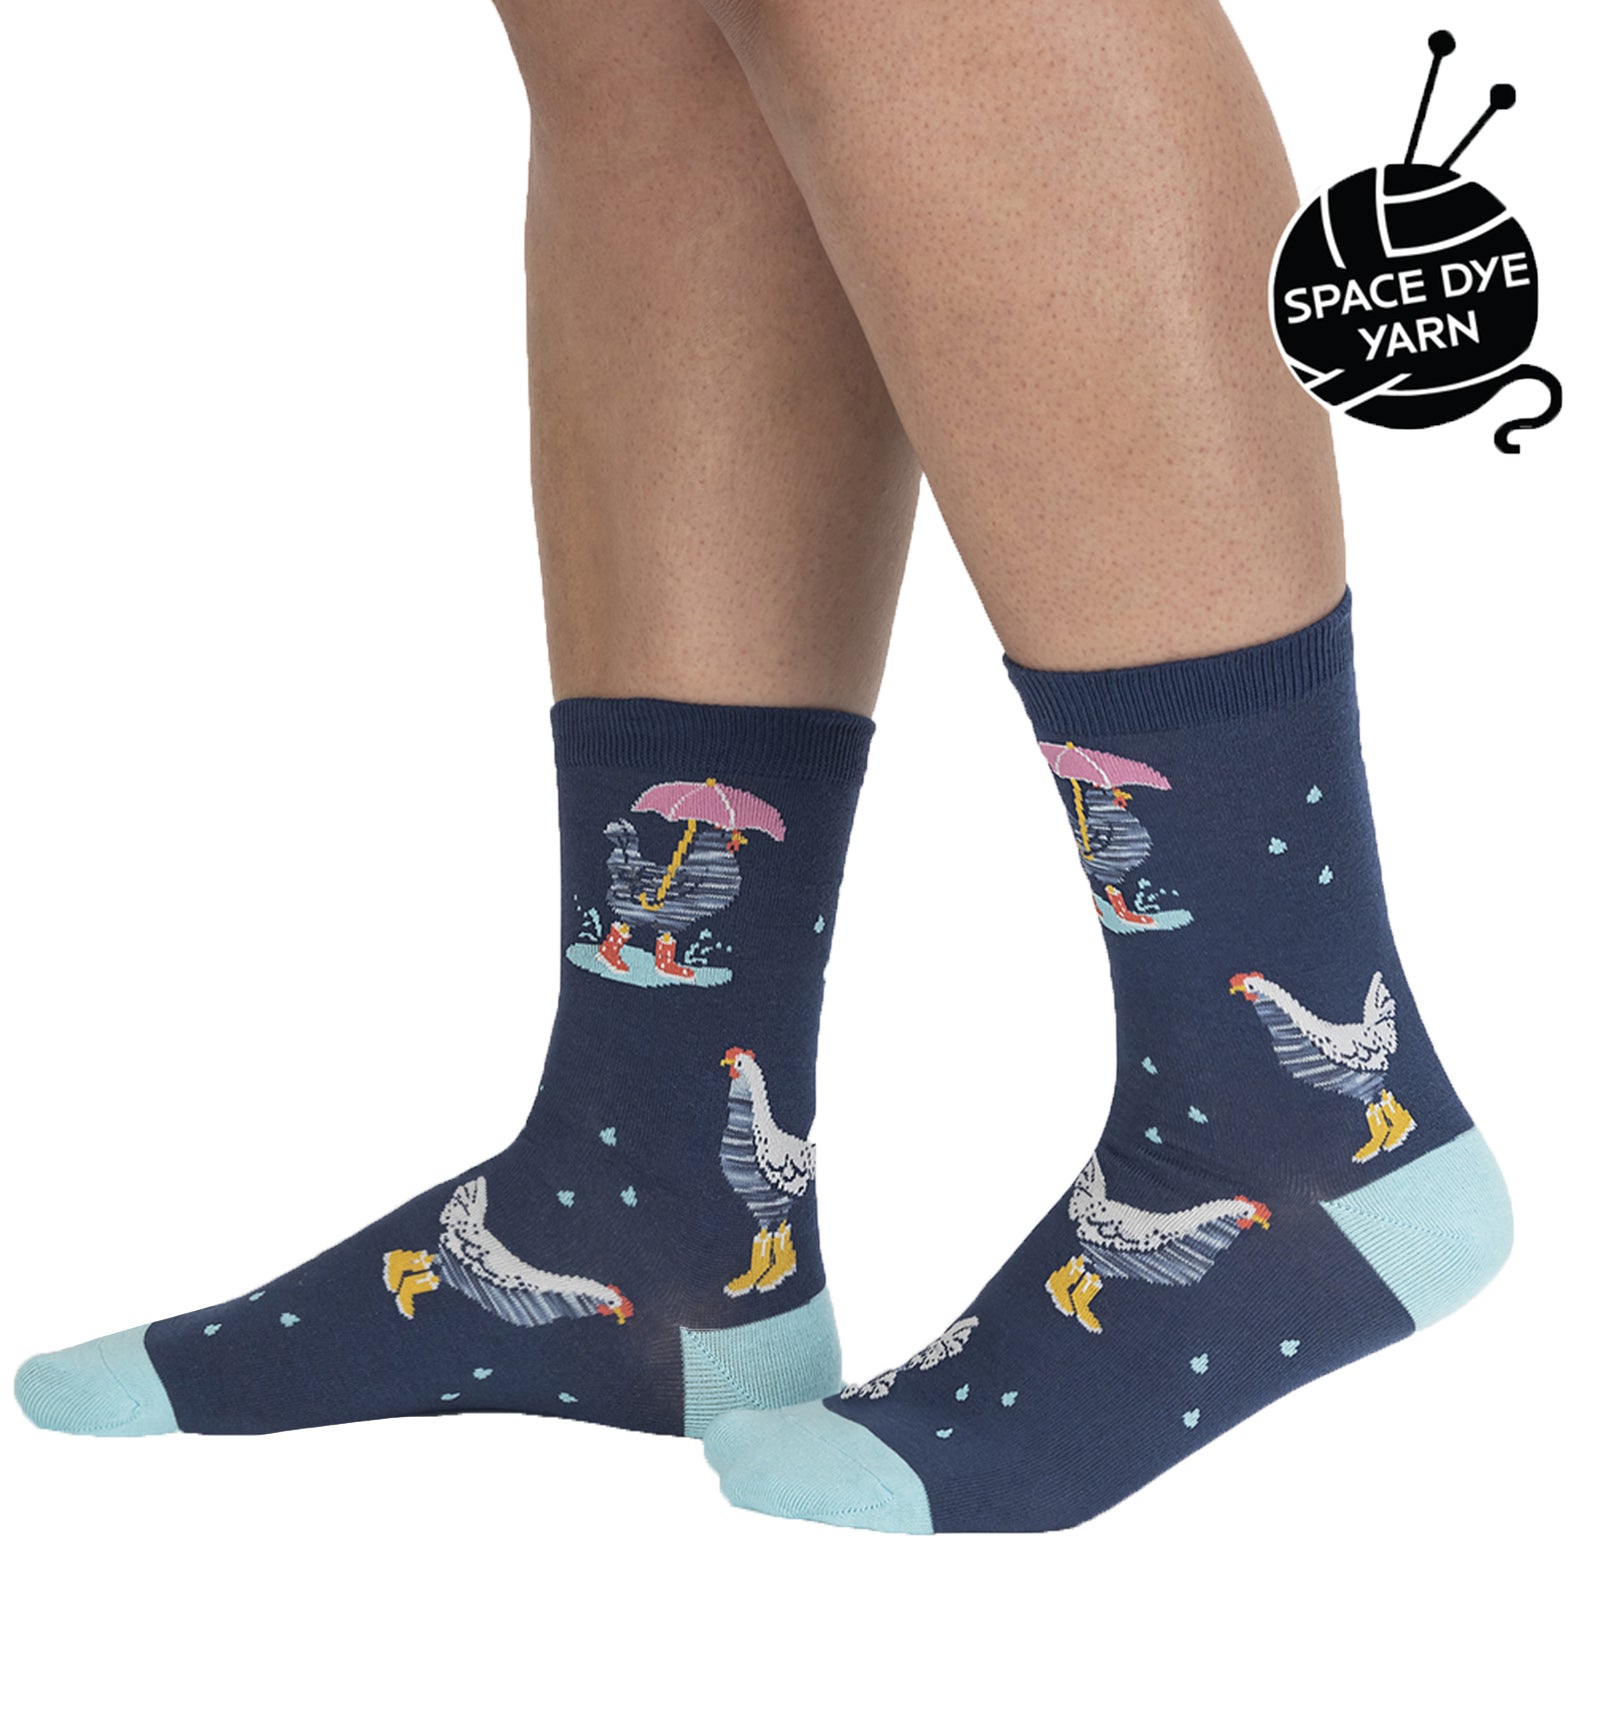 SOCK it to me Women's Crew Socks (W0453),Chicken Little - Chicken Little,One Size